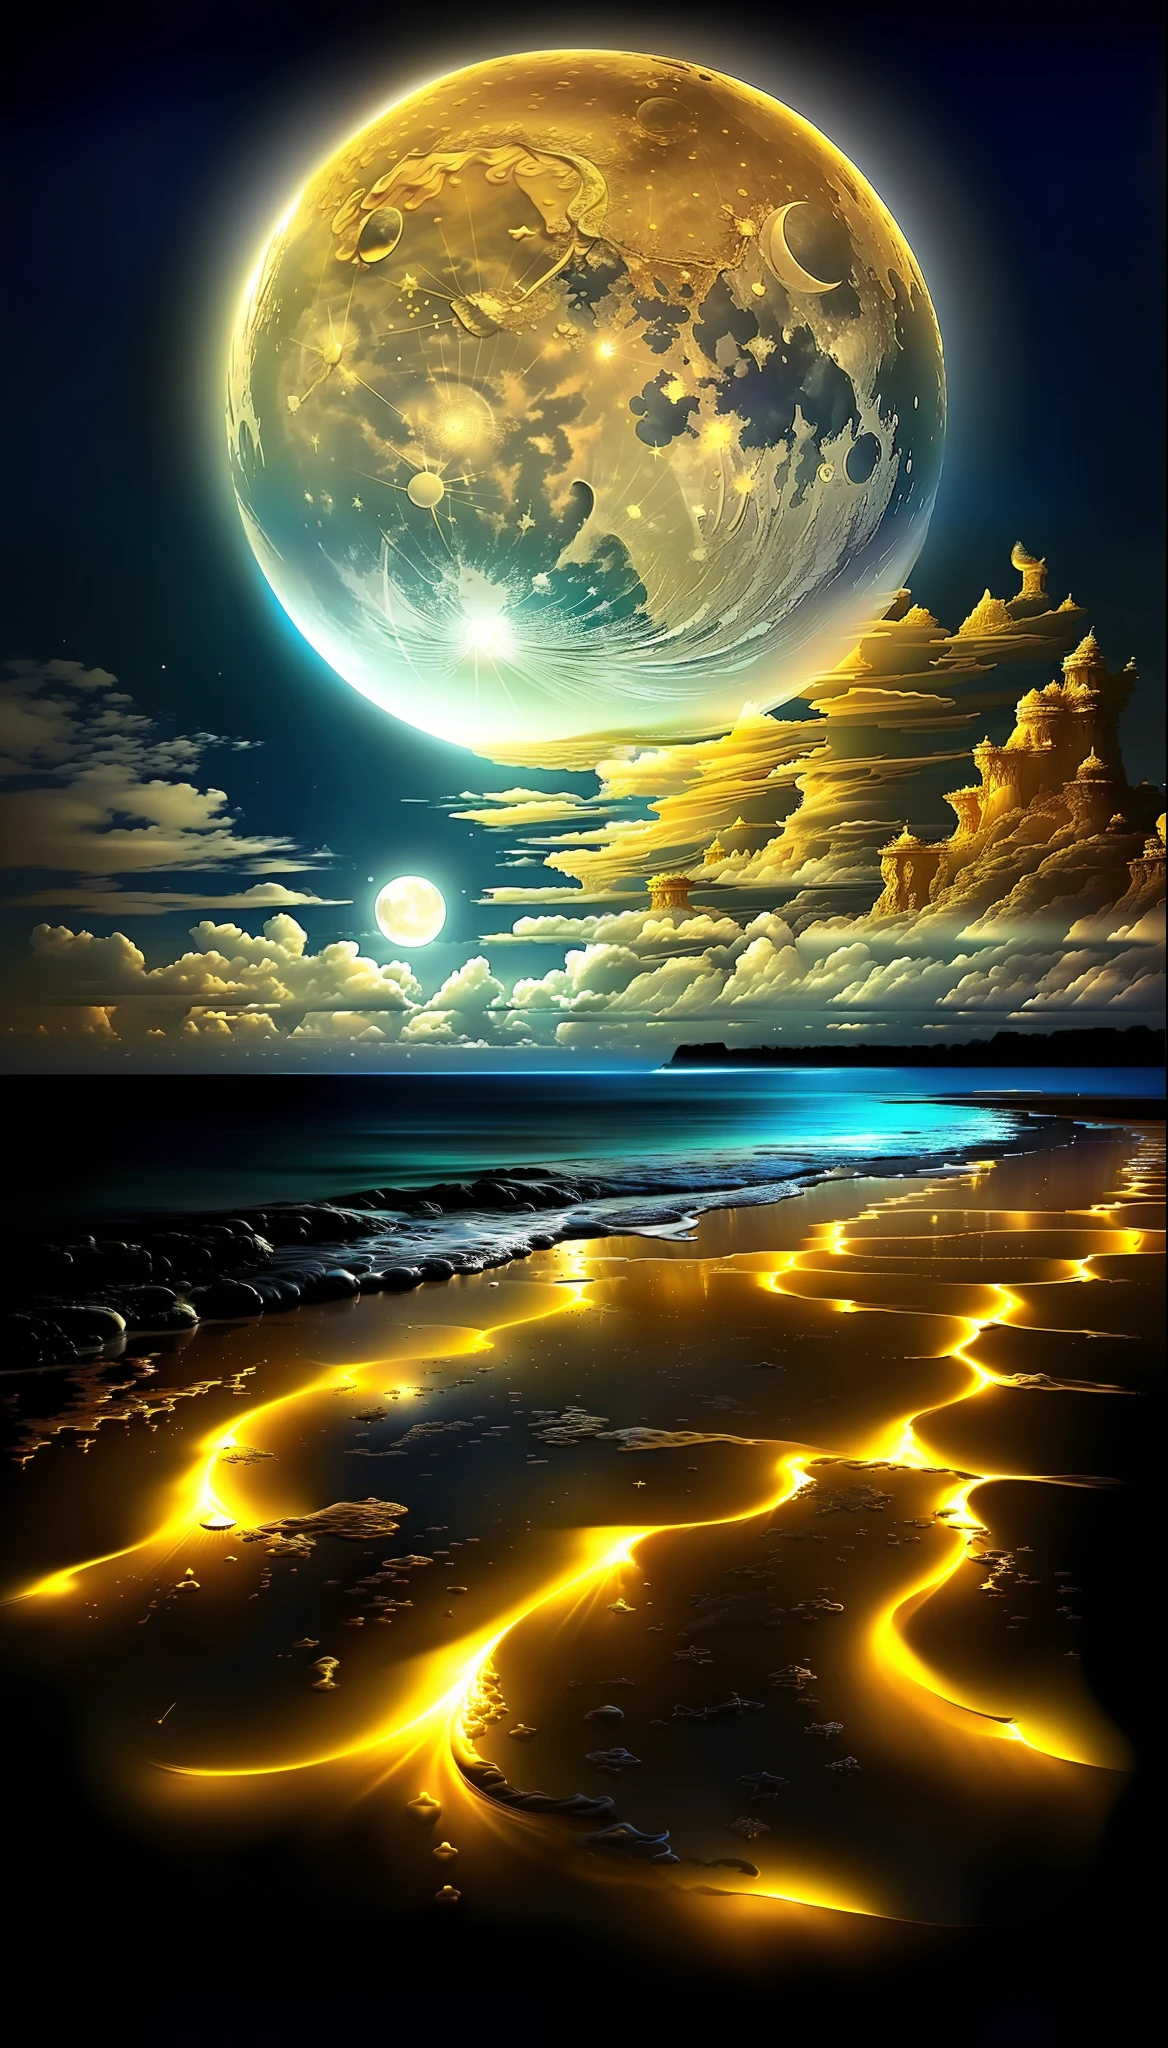 لوحة لشاطئ مع البدر الذهبي وبعض الغيوم, الشاطئ السحري, المناظر الطبيعية القمر الأبيض الرملي, مساحة سريالية, خلفية رائعة, صورة جميلة تم إنشاؤها بالفعل, الكون في حبة رمل, قطرات المحيط الزرقاء السحرية, مشهد الأحلام التفصيلي, القمر يسطع الضوء الذهبي, حالم جميل لالتقاط الأنفاس, في المستوى النجمي ) ), شاشة توقف مذهلة,  مساحة جميلة, ضوء القمر الجميل